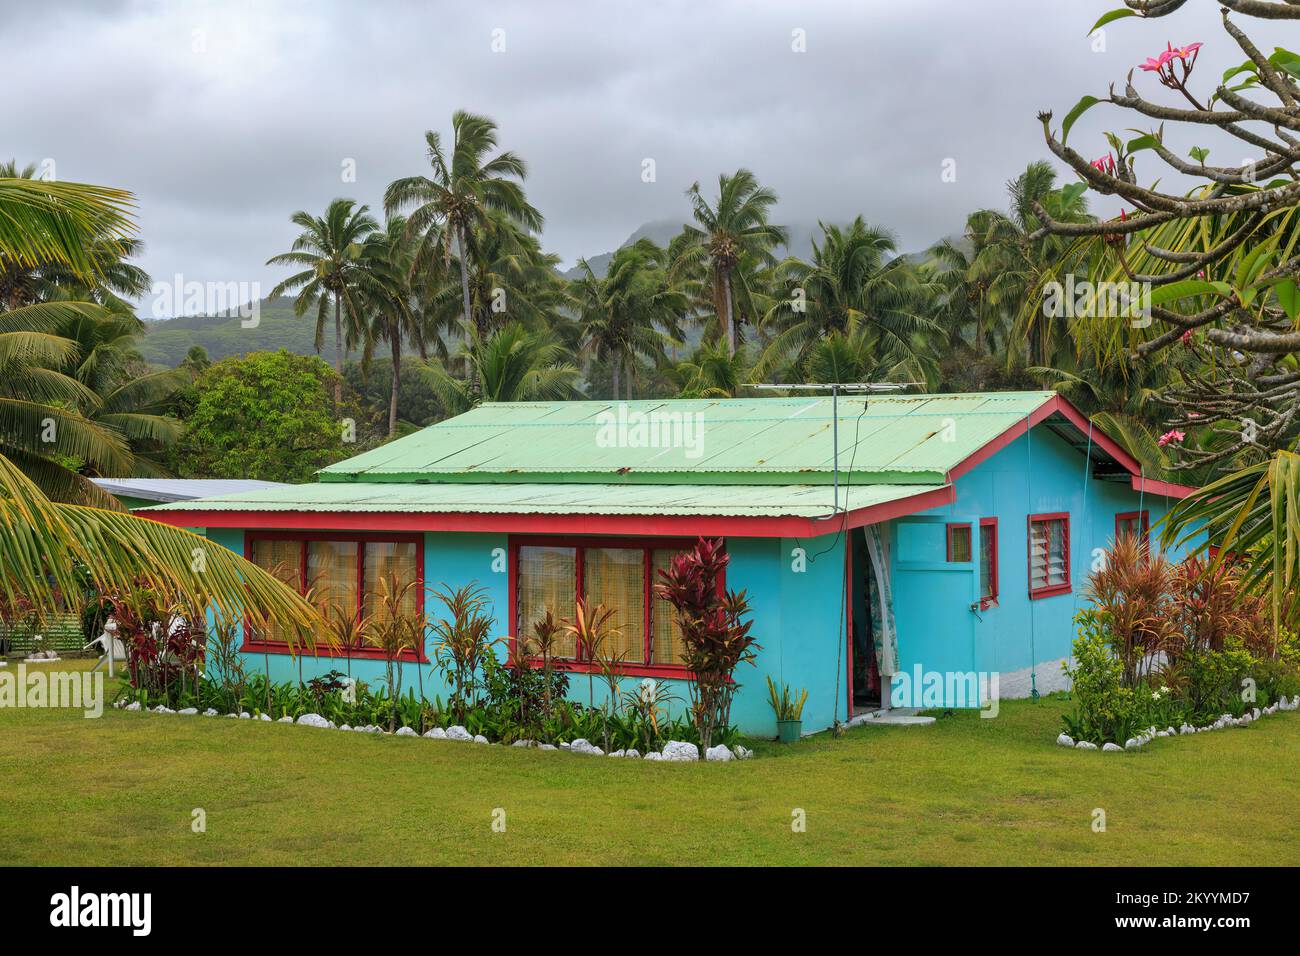 Una piccola casa colorata su un'isola tropicale del Sud Pacifico, con piante ti e un frangipani nel giardino Foto Stock